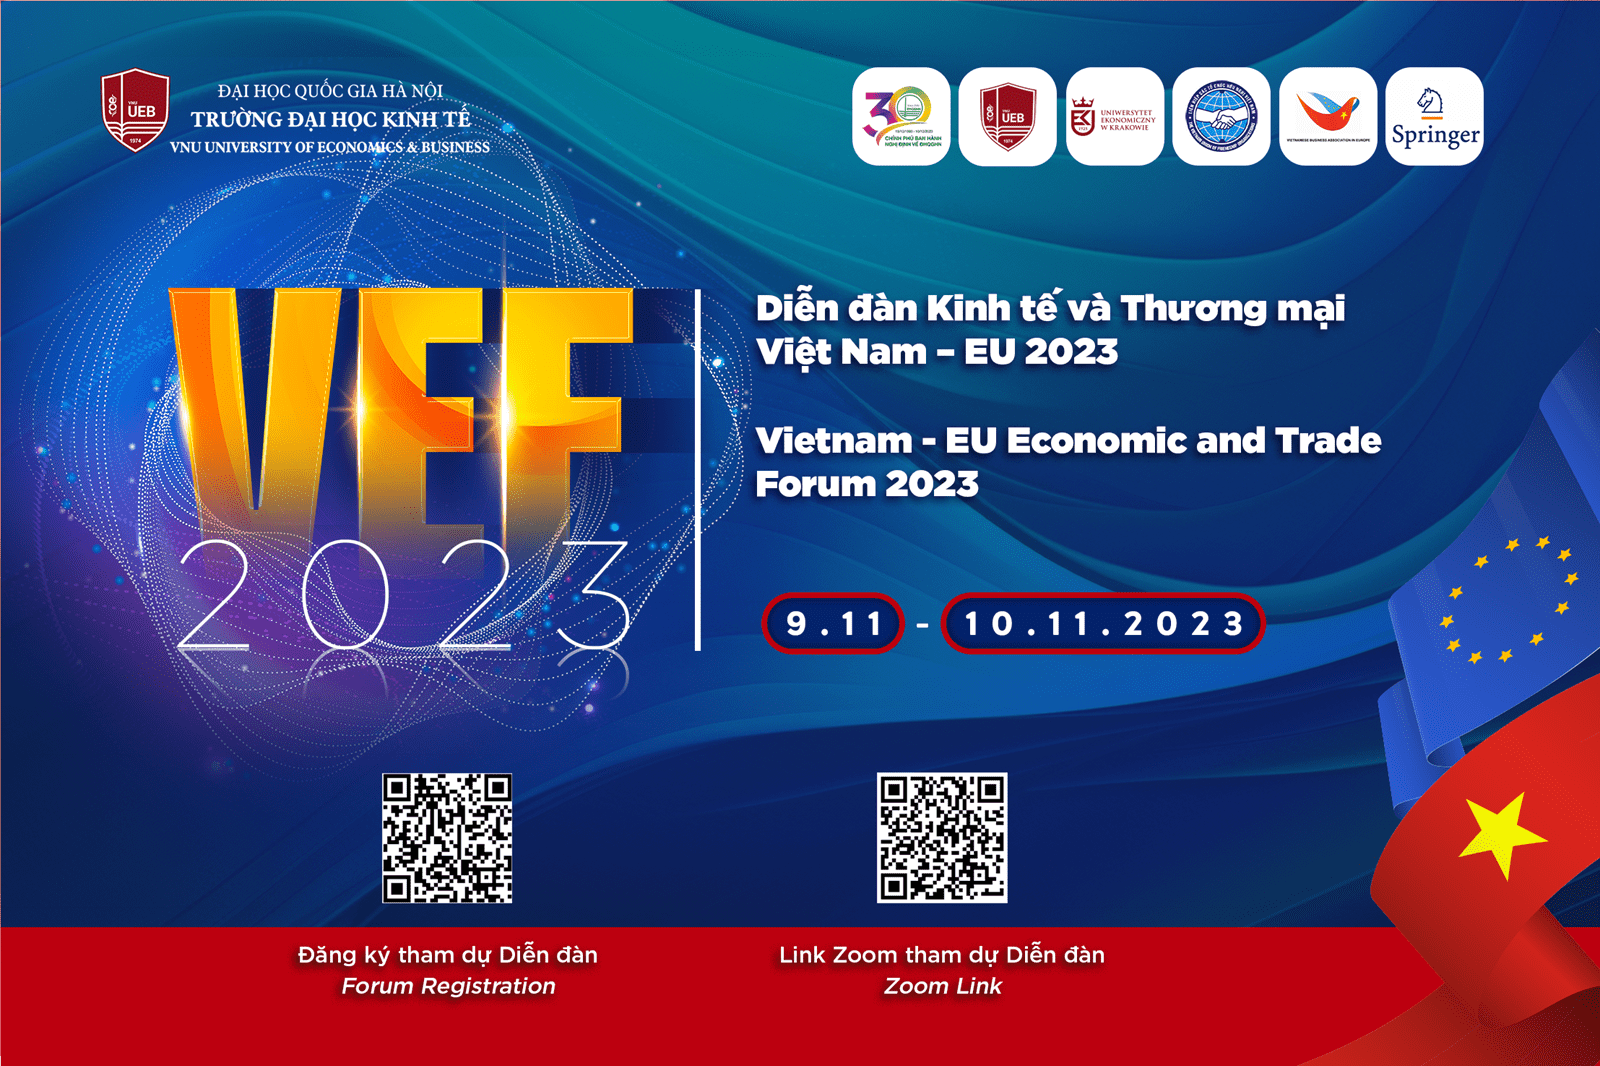 UEB chủ trì tổ chức Diễn đàn Kinh tế và Thương mại Việt Nam – EU 2023